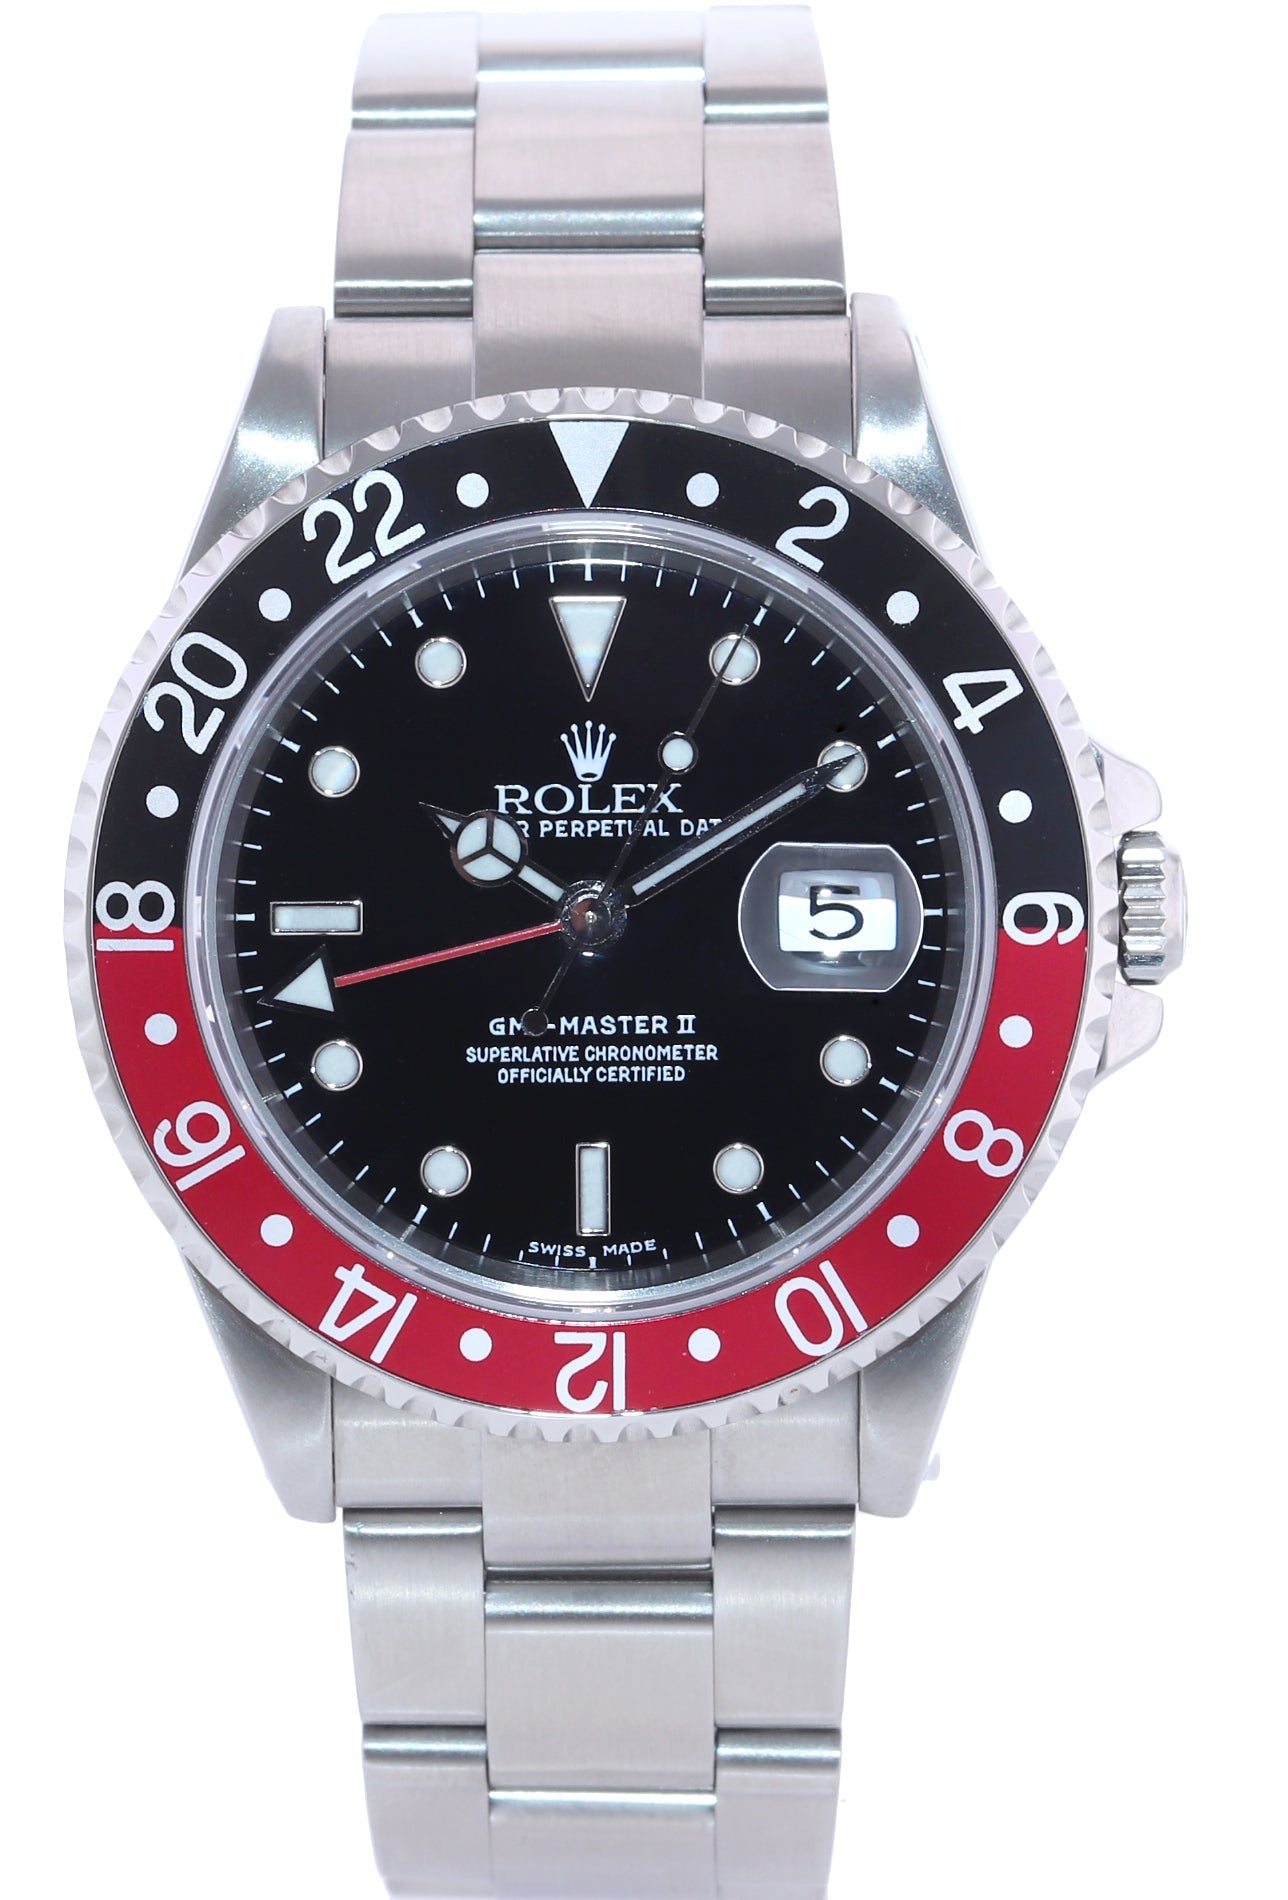 2002 Rolex GMT-Master II Coke Red Black Steel 16710 40mm Watch Box